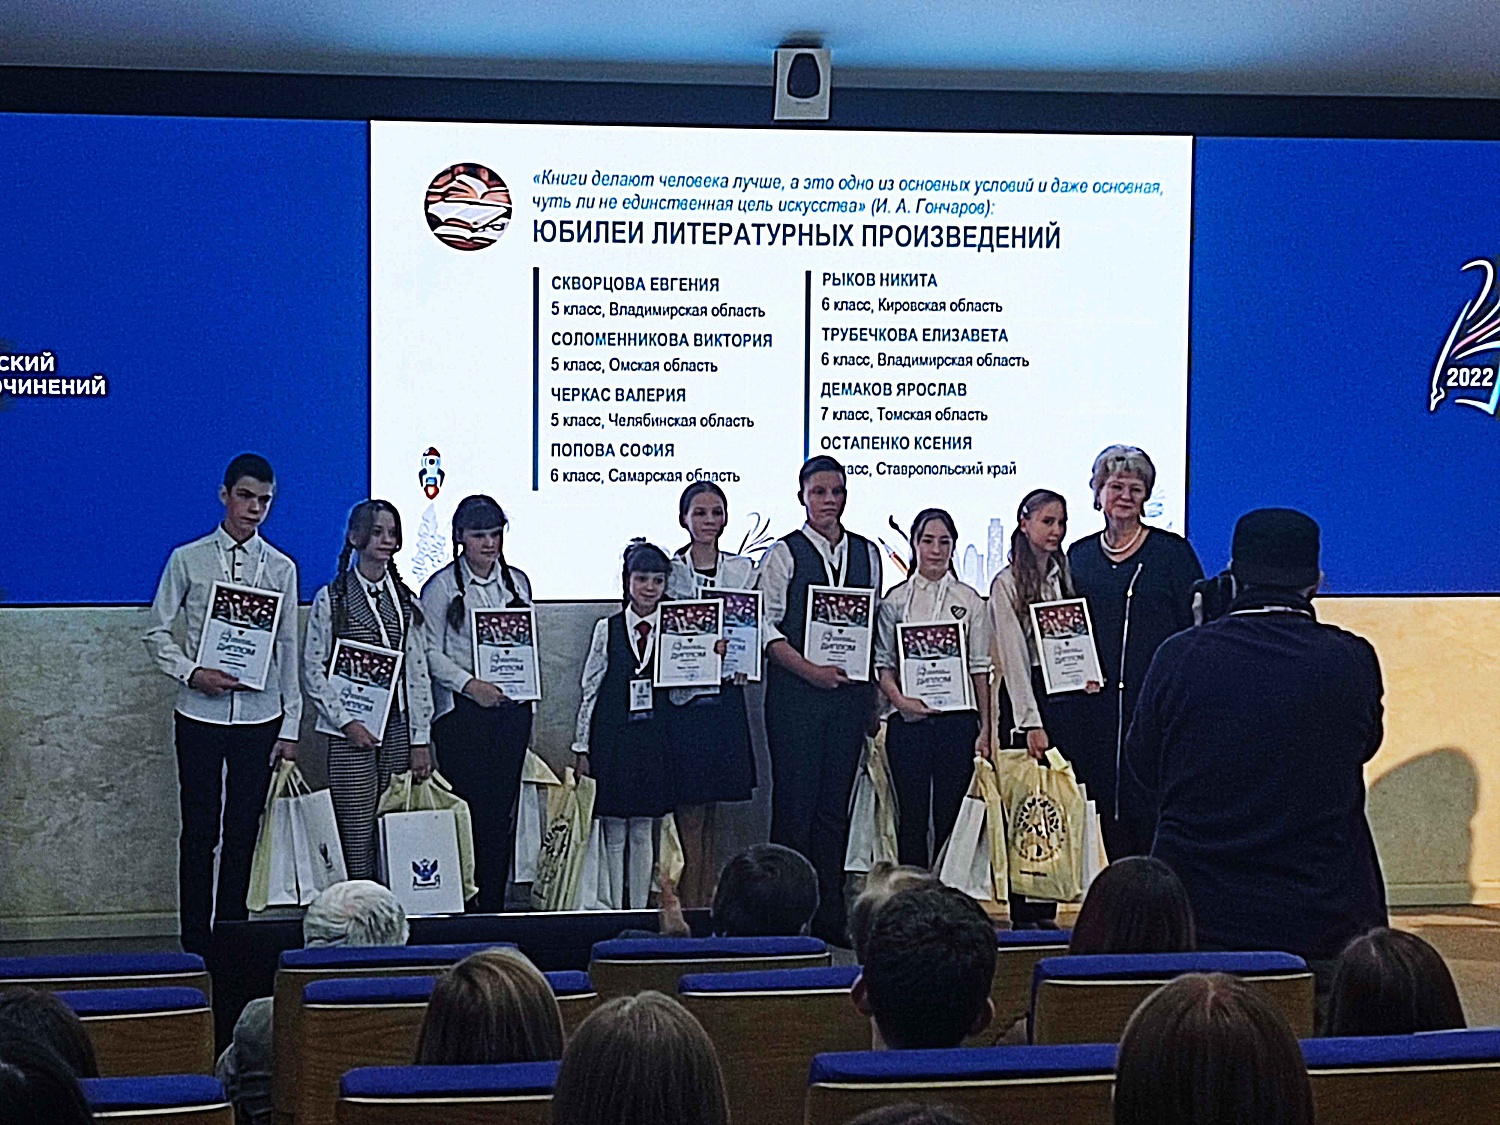 Всероссийский конкурс сочинений 2022. Награждение победителей в Москве